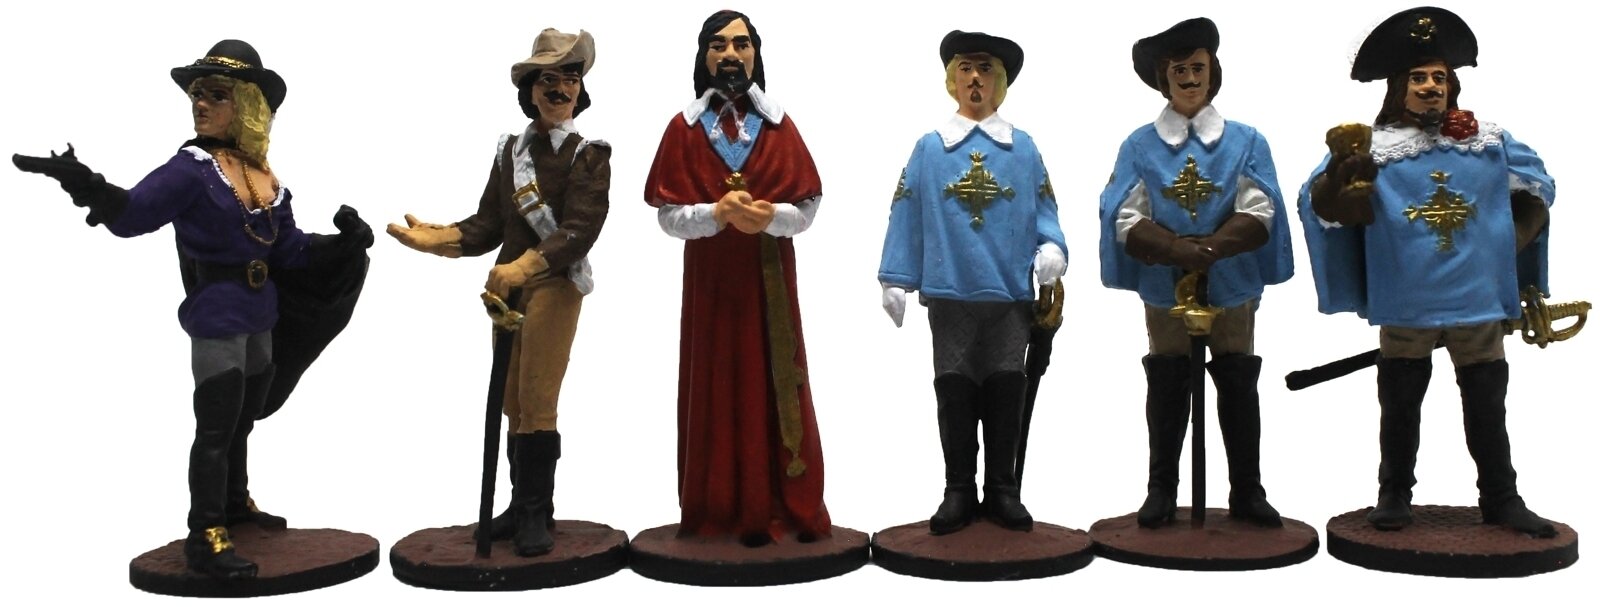 "Киногерои: Четыре мушкетера и Кардинал" №16РТ (6 э) набор оловянных солдатиков сувенирный покрас в картонной коробке